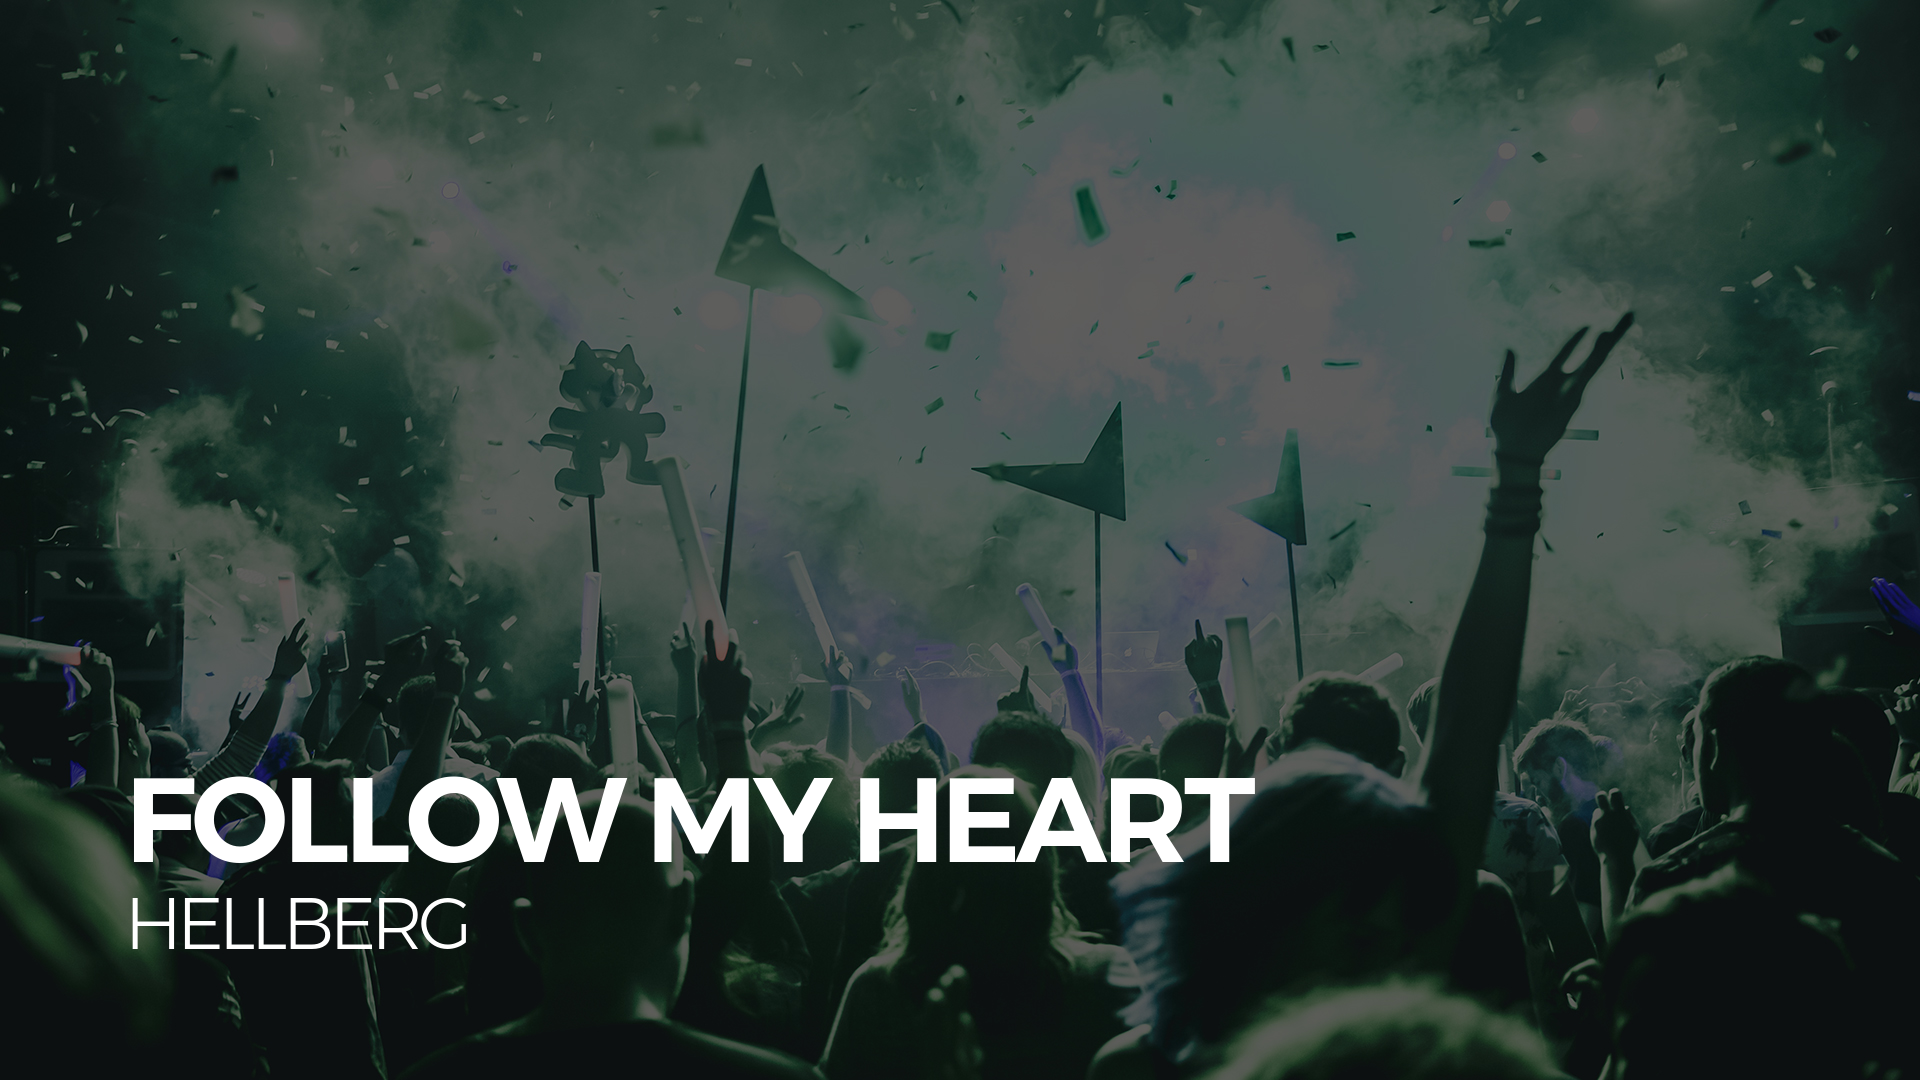 [House] - Hellberg - Follow My Heart [Monstercat Release]